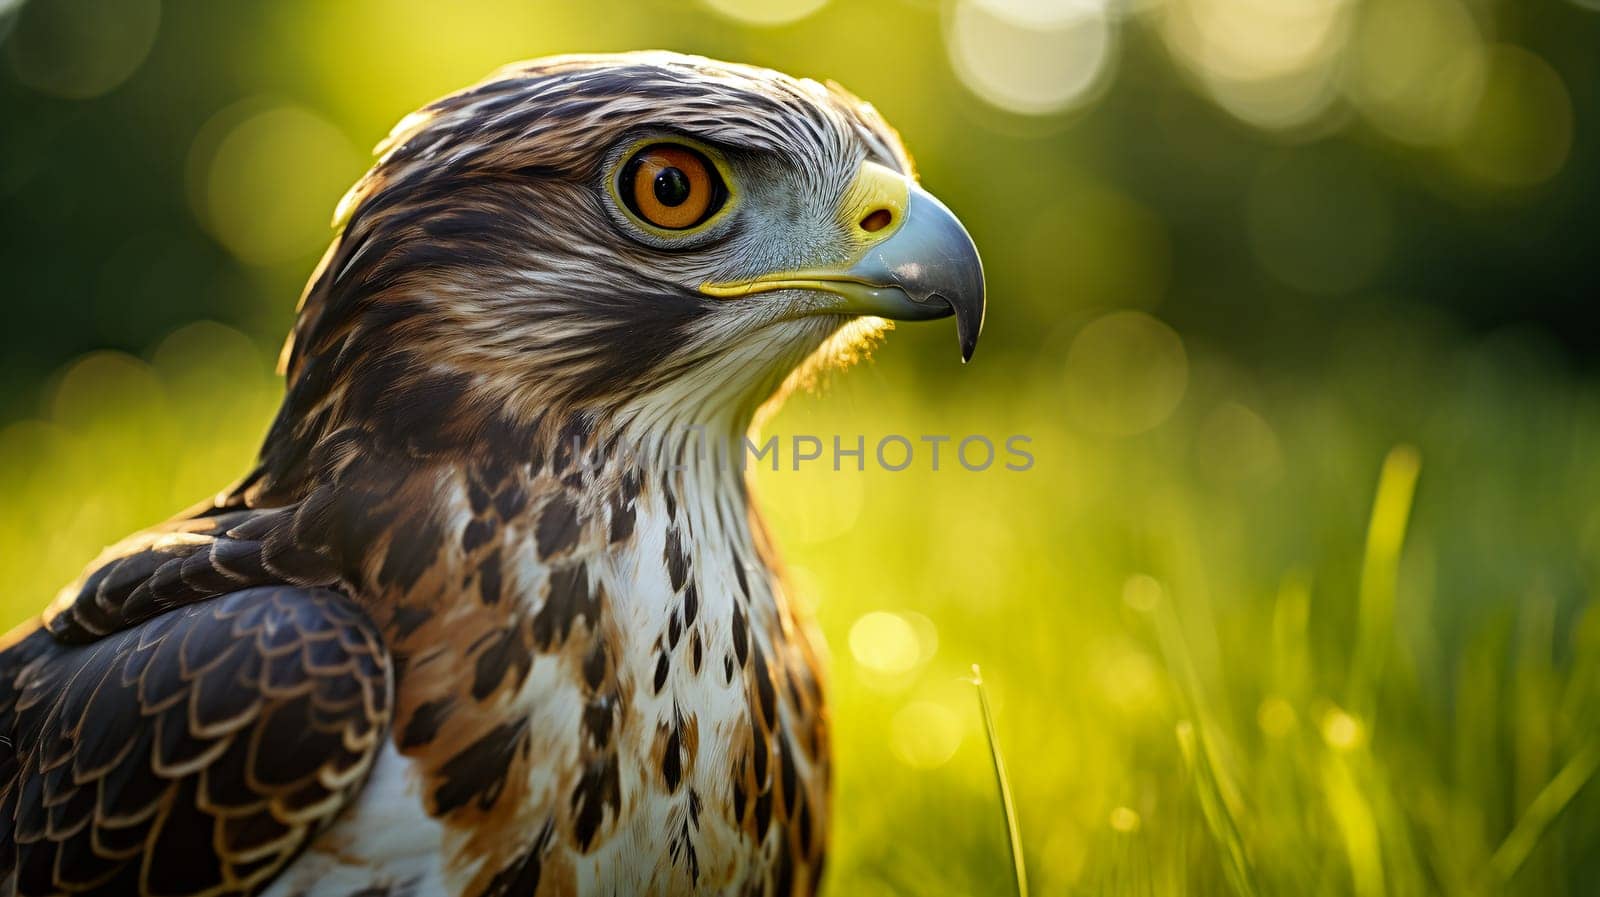 Majestic bird of prey in Sunlit Field by chrisroll